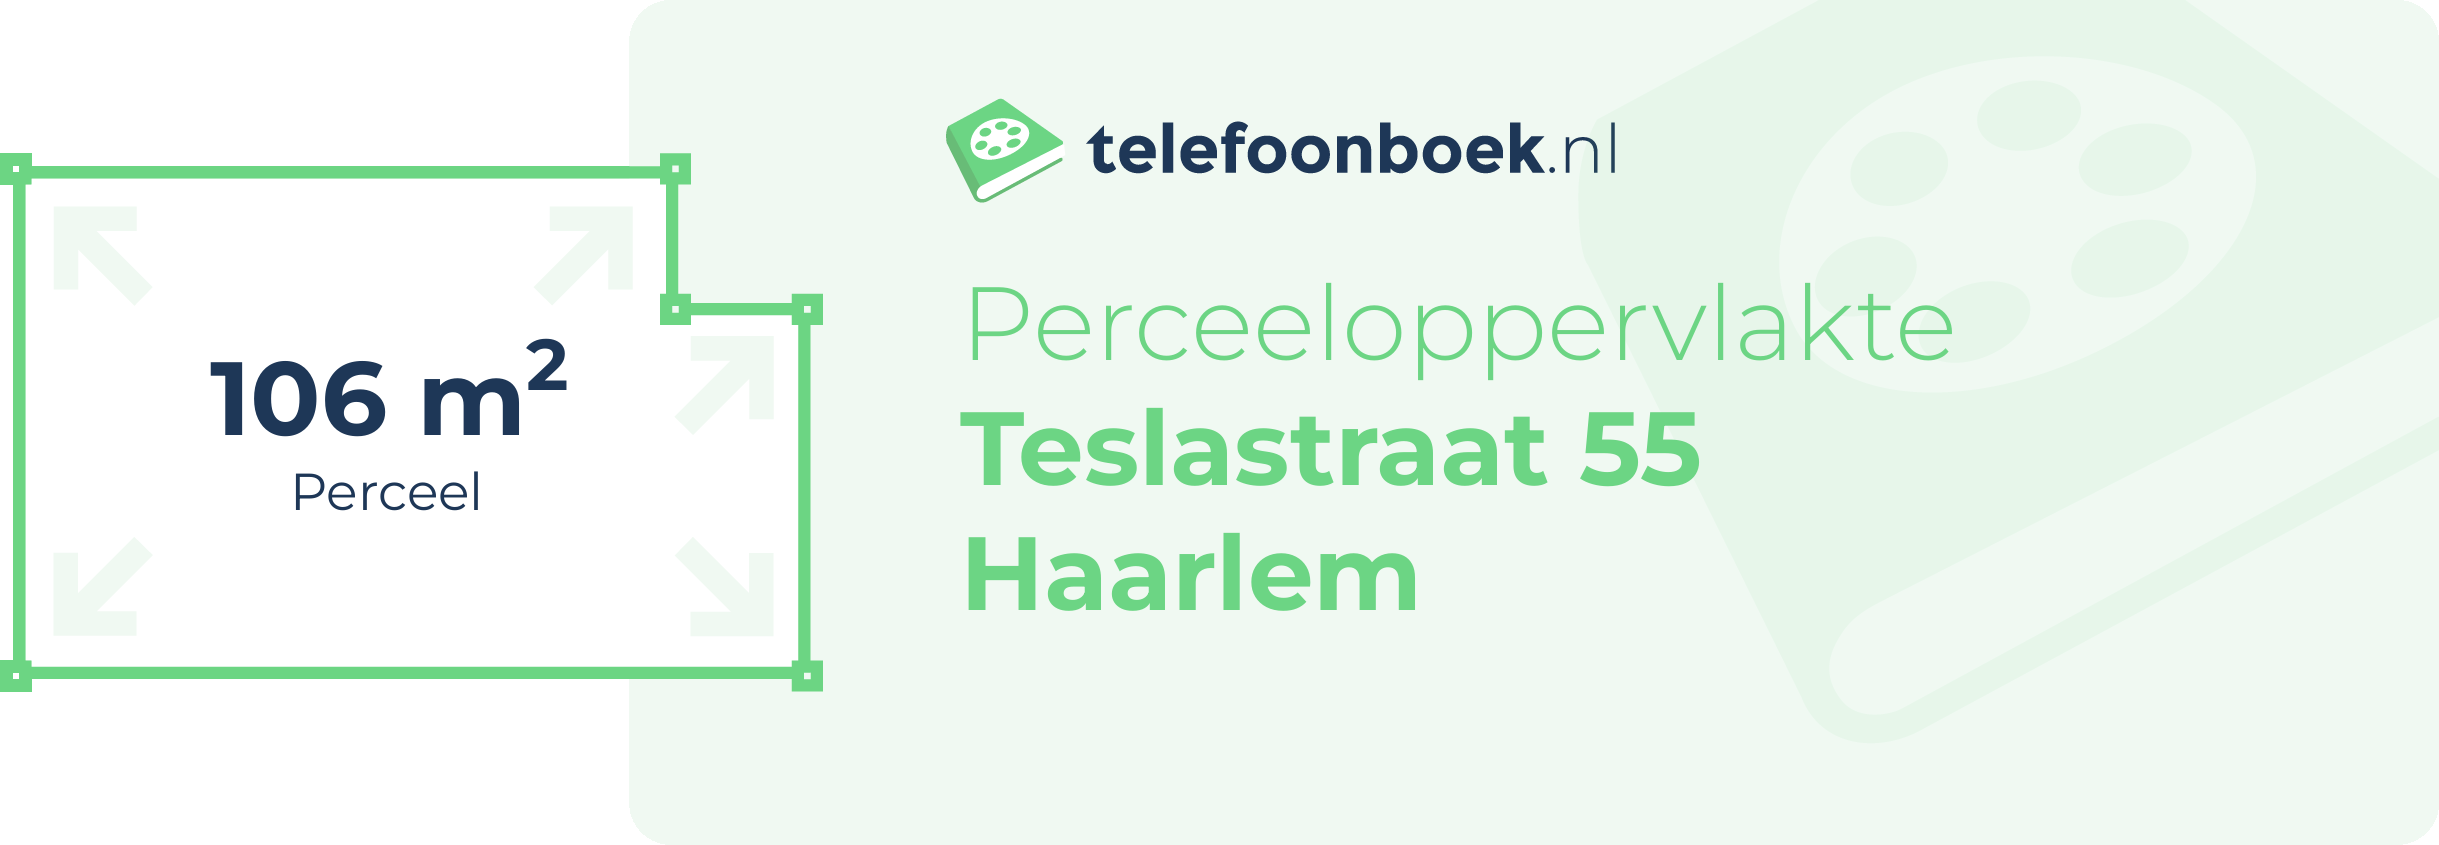 Perceeloppervlakte Teslastraat 55 Haarlem